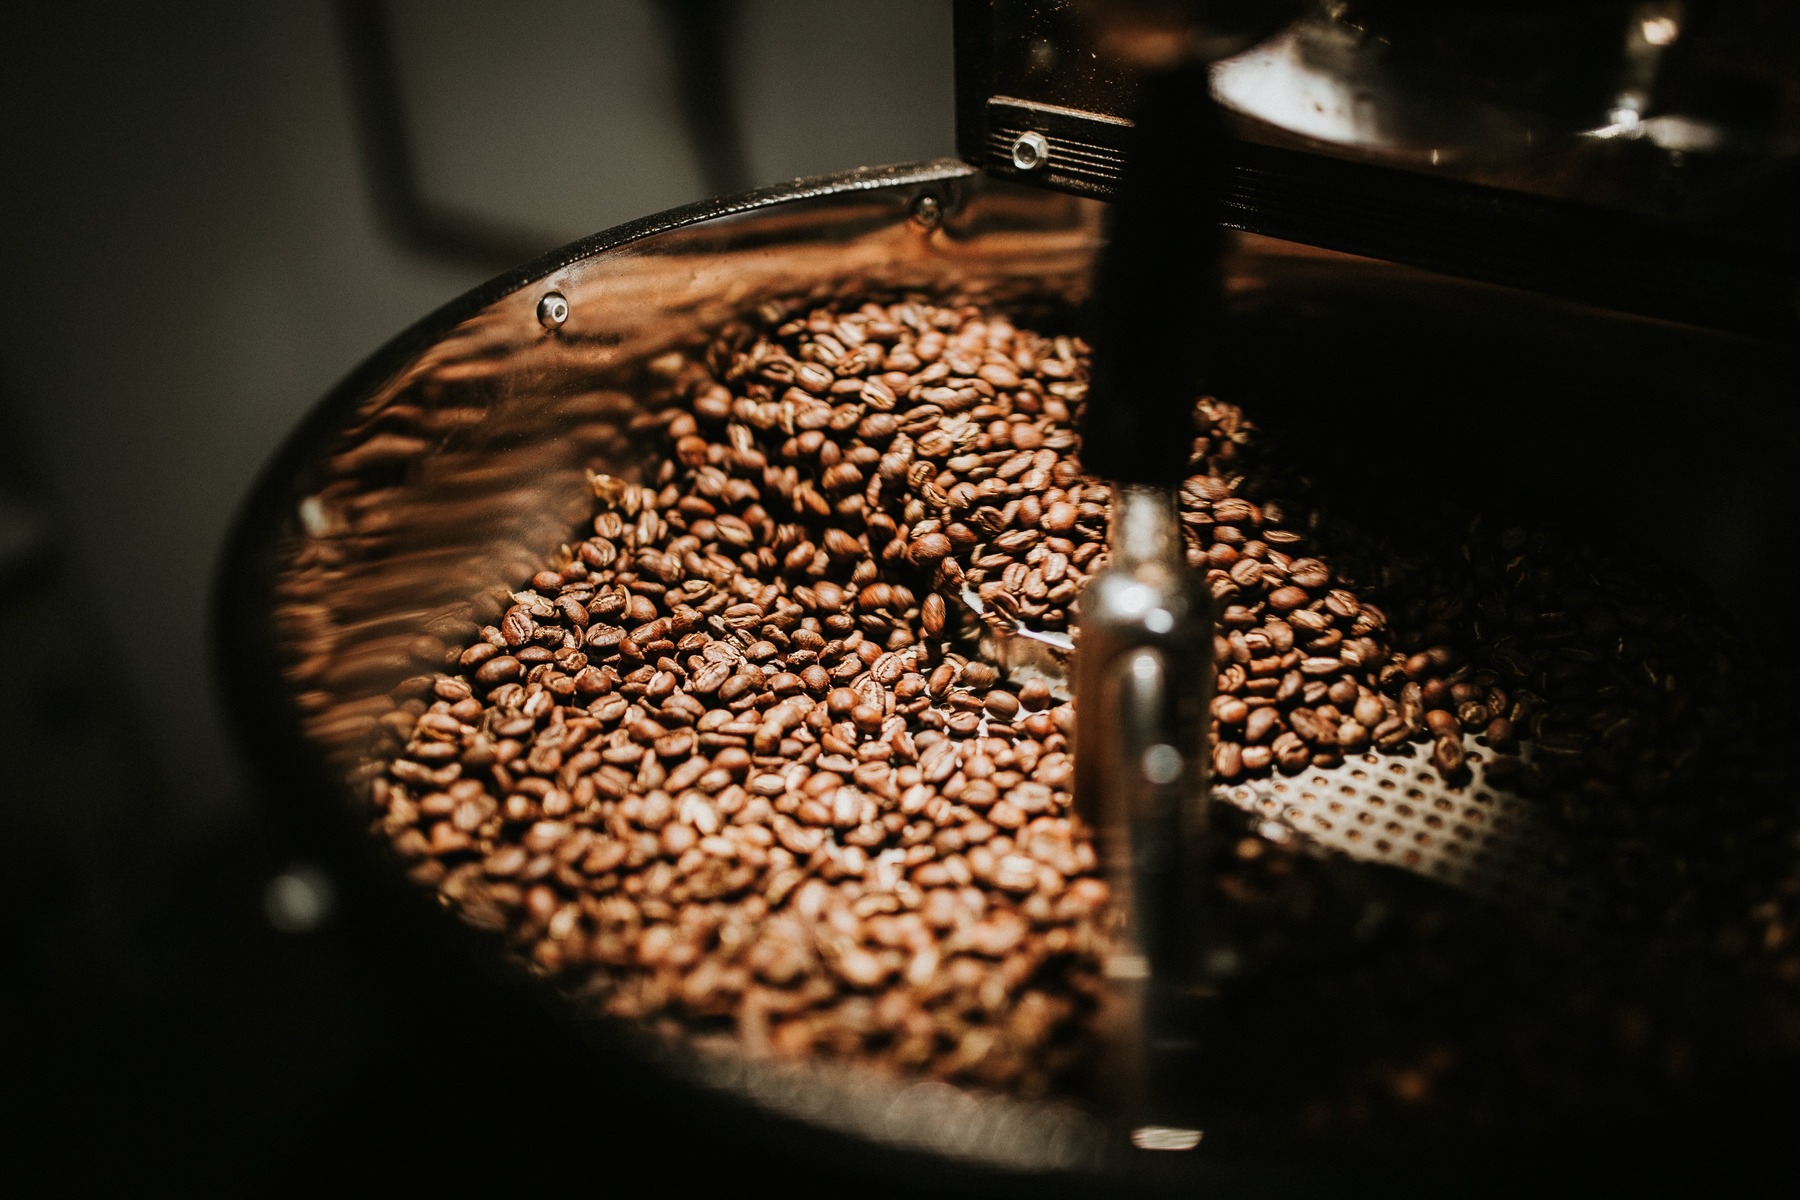 Resan från böna till kopp: Så påverkar bearbetningsmetoden kaffets smakprofil